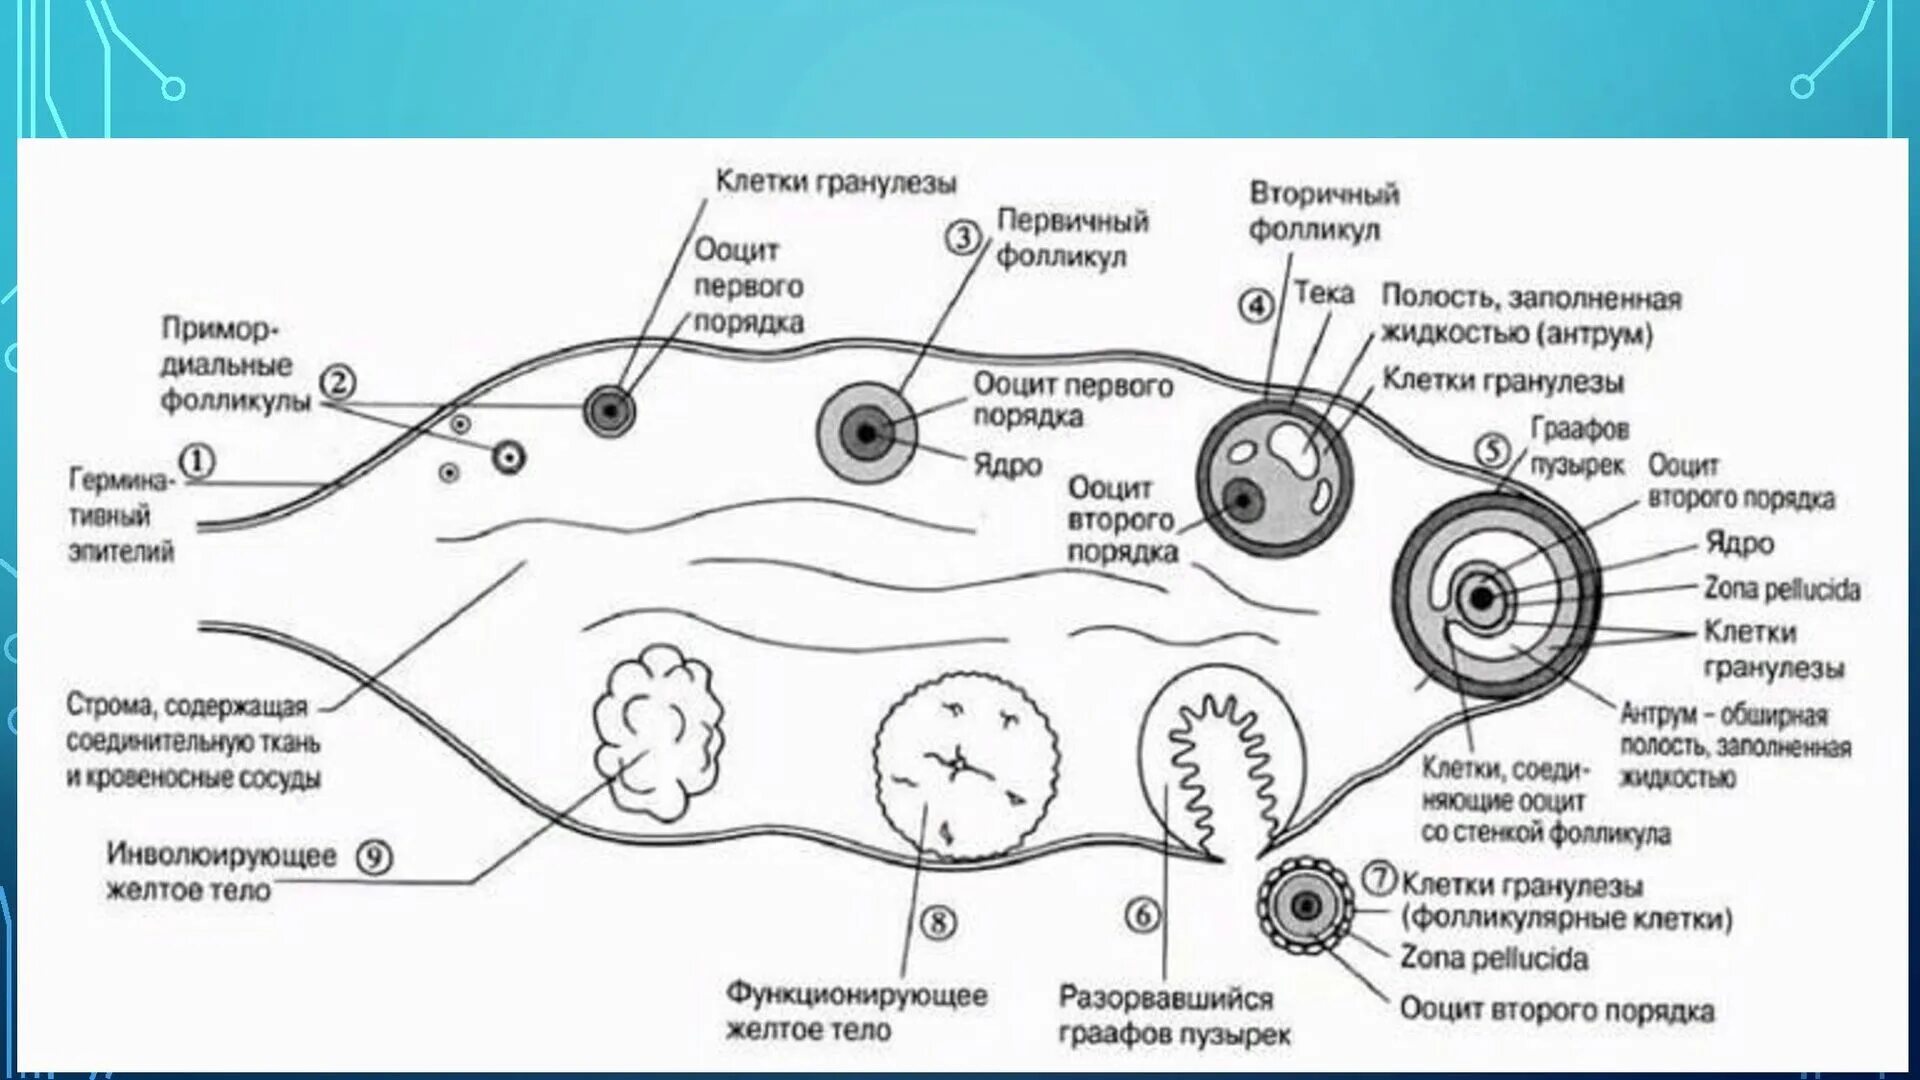 Где происходит образование яйцеклеток. Схема оплодотворения яйцеклетки. Схема созревания яйцеклетки в яичнике. Схема оплодотворения яйцеклетки у человека. Фазы оплодотворения схема.